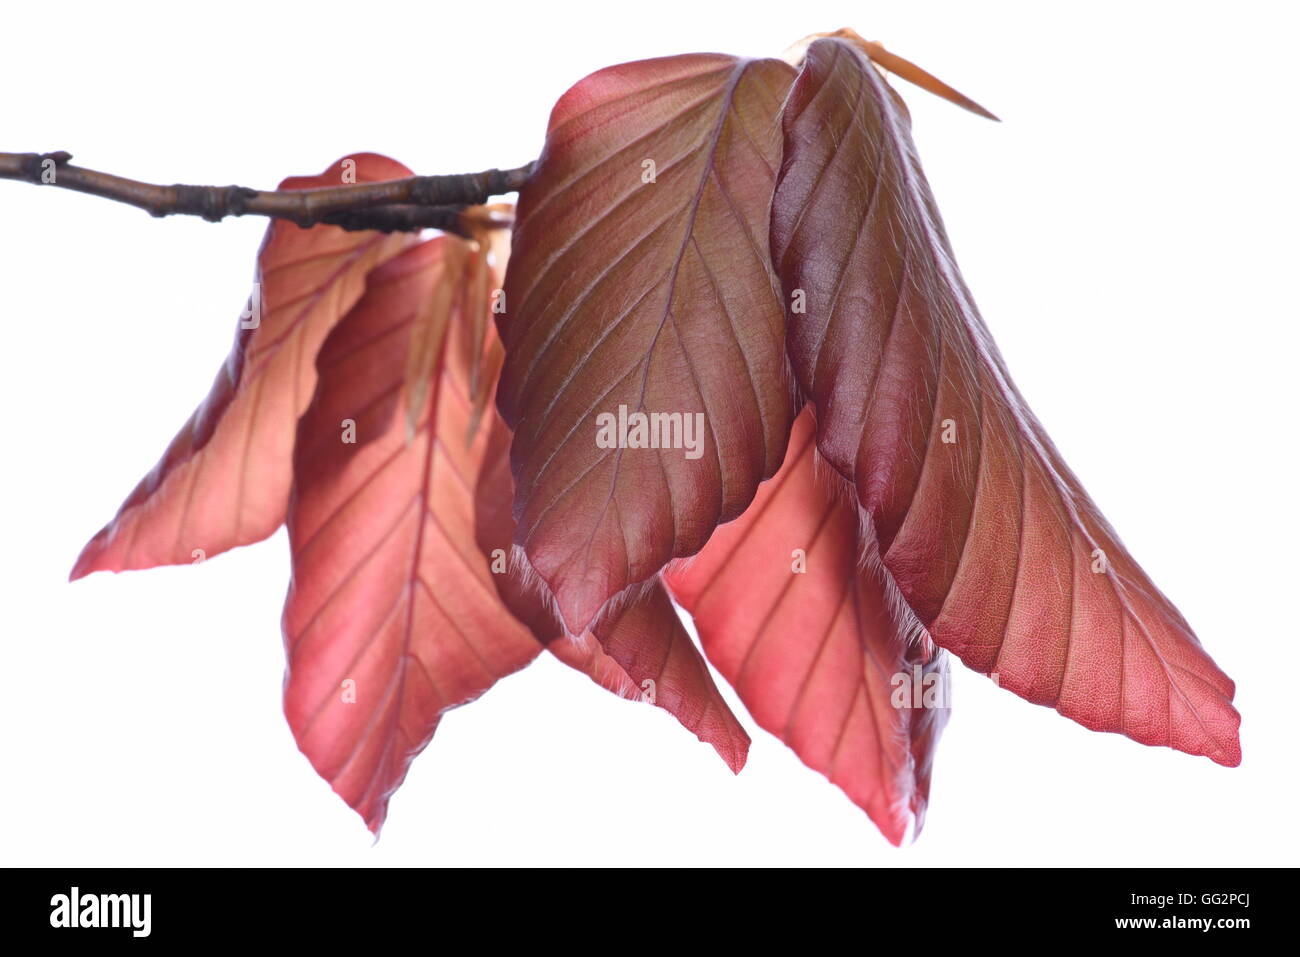 Ramoscello con faggio foglie in primavera close-up isolati su sfondo bianco Foto Stock